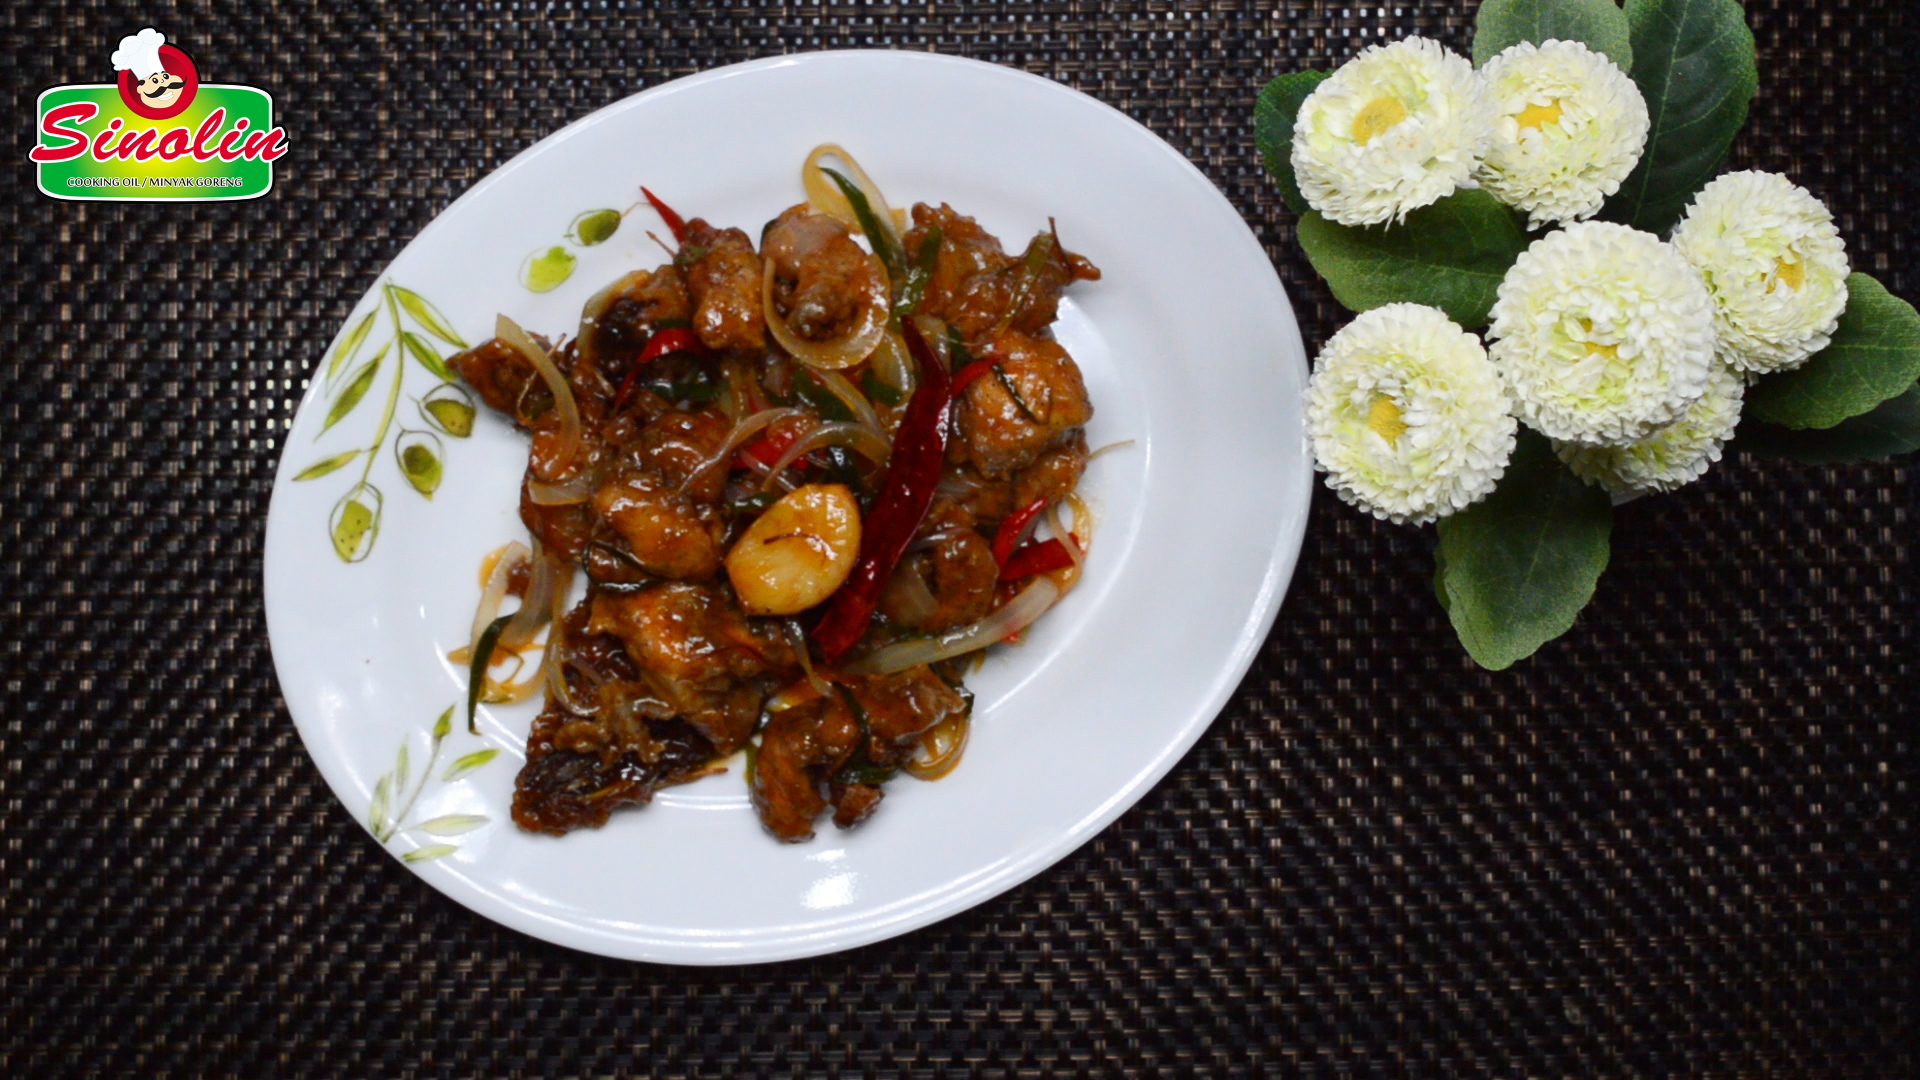 Spicy Fried Chicken Garlics (Kkanpunggi) by Dapur Sinolin